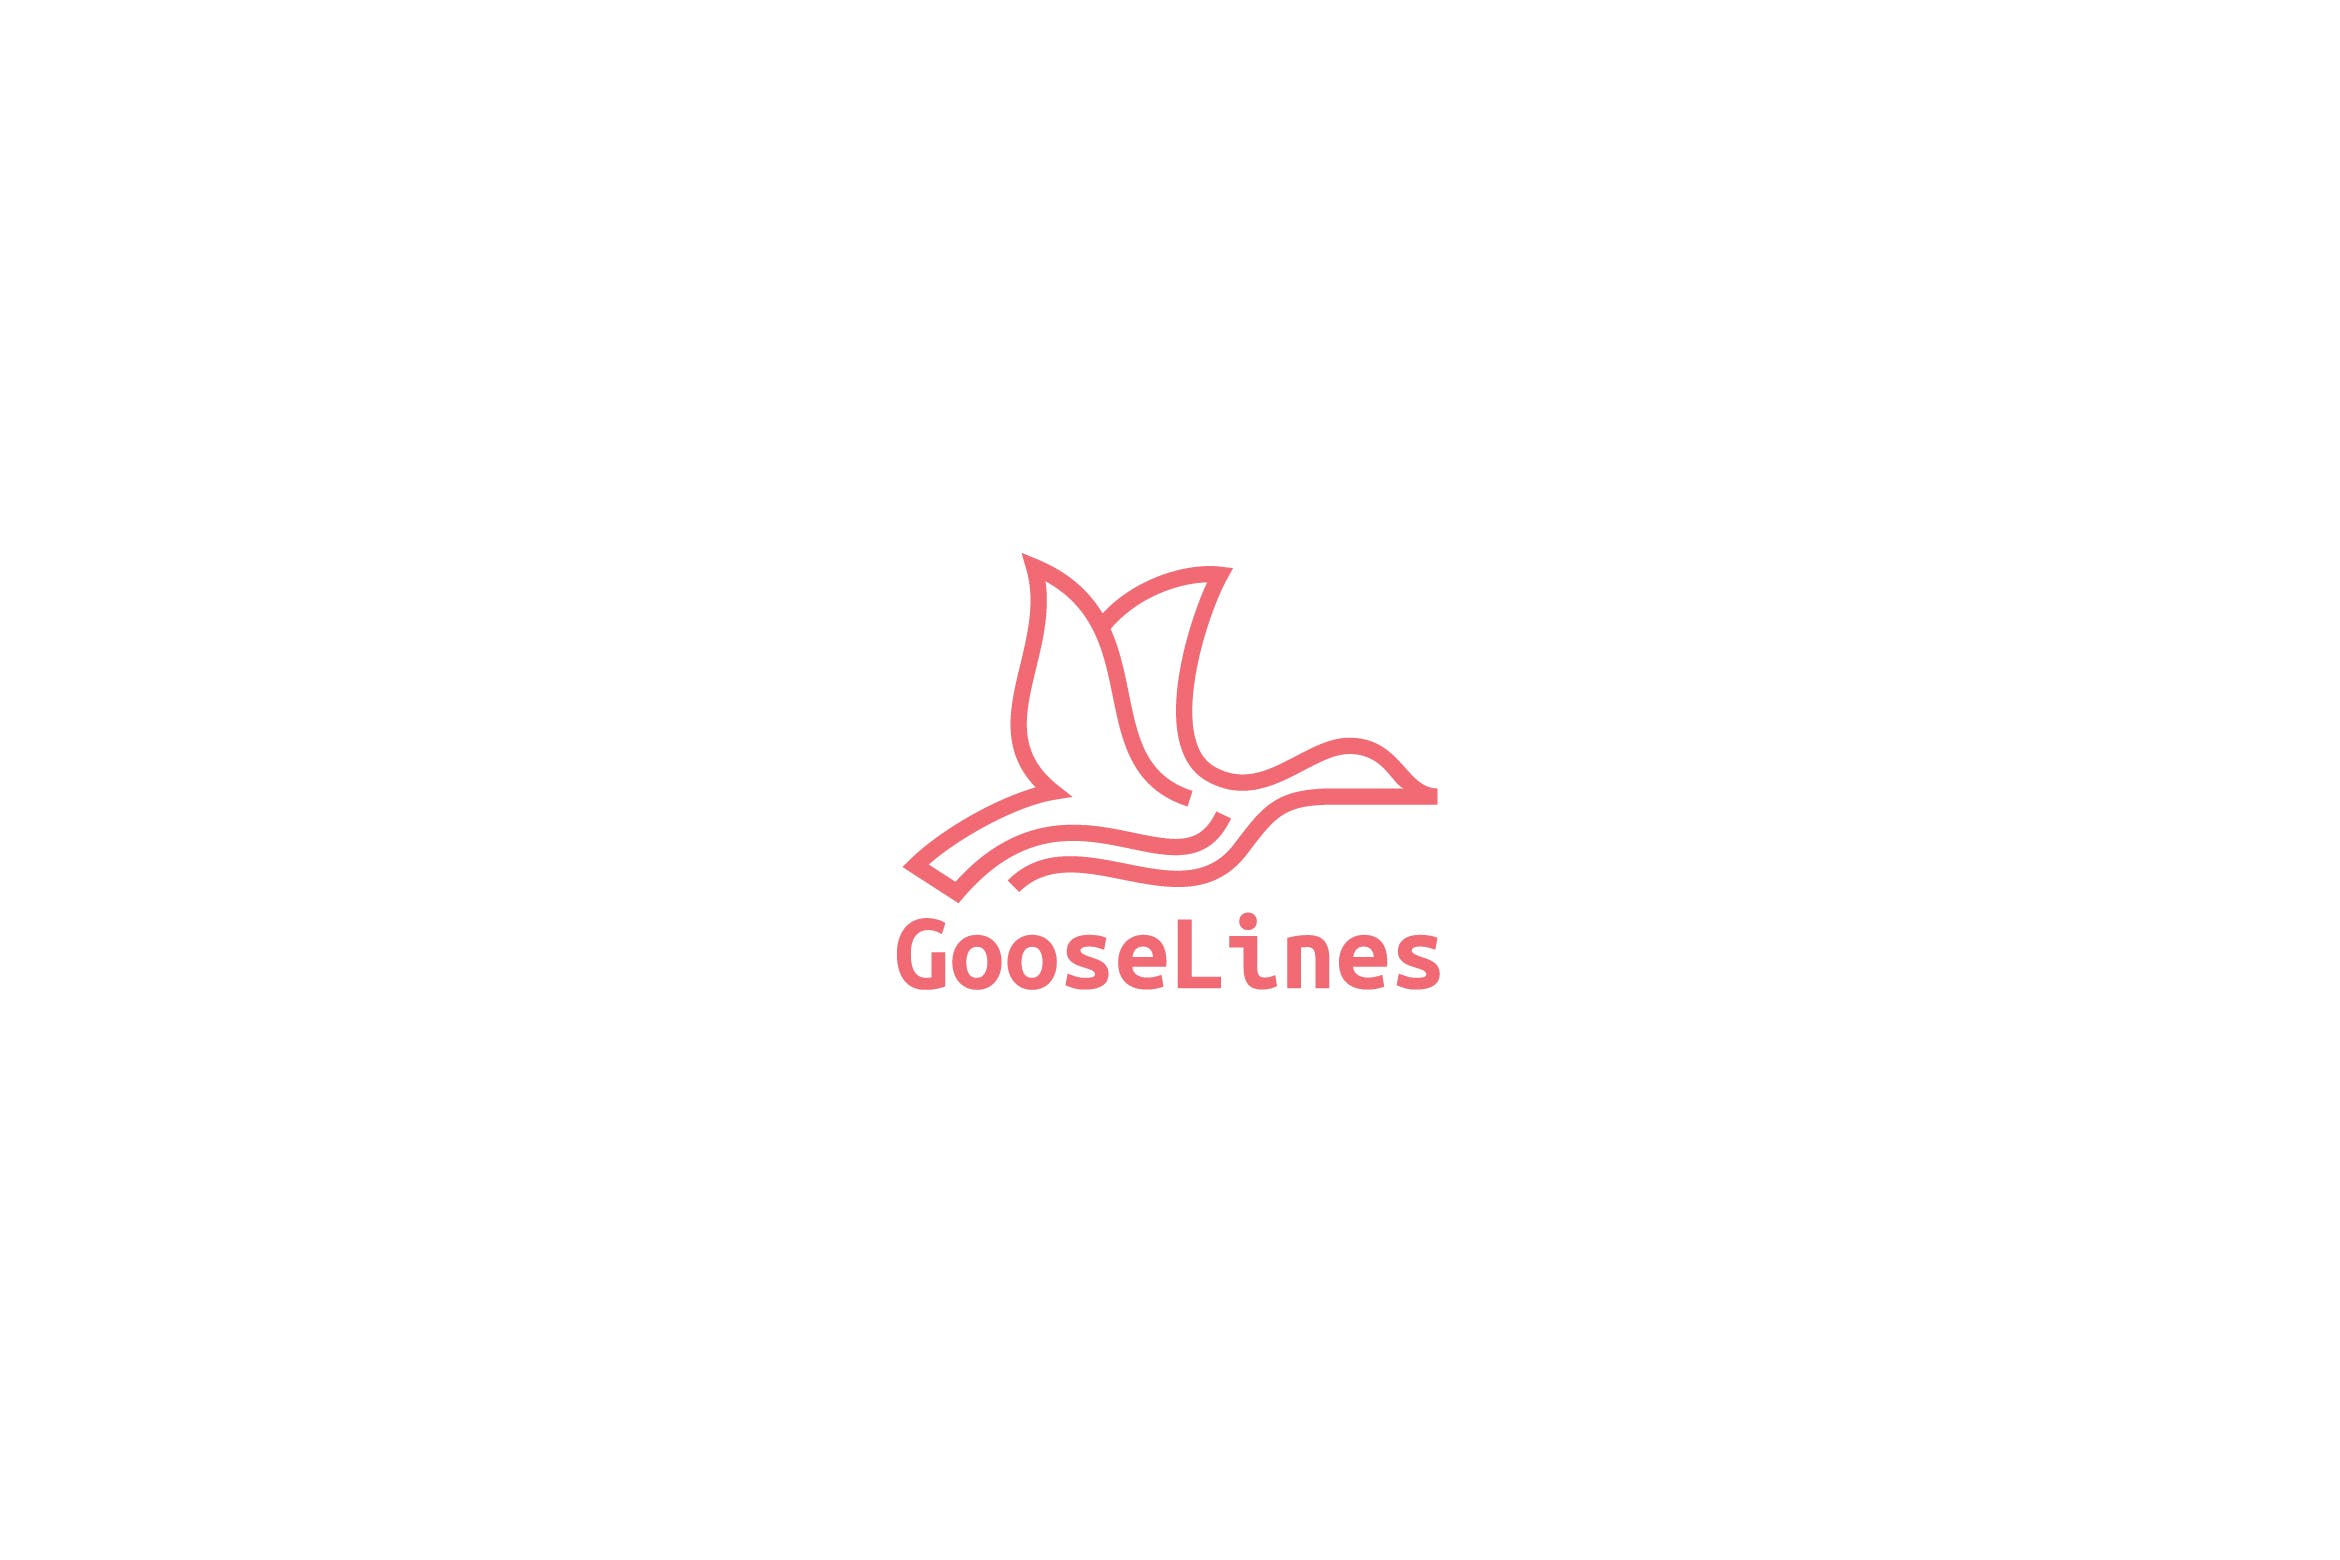 天鹅简笔画线条图形Logo设计第一素材精选模板 Goose Lines Logo插图